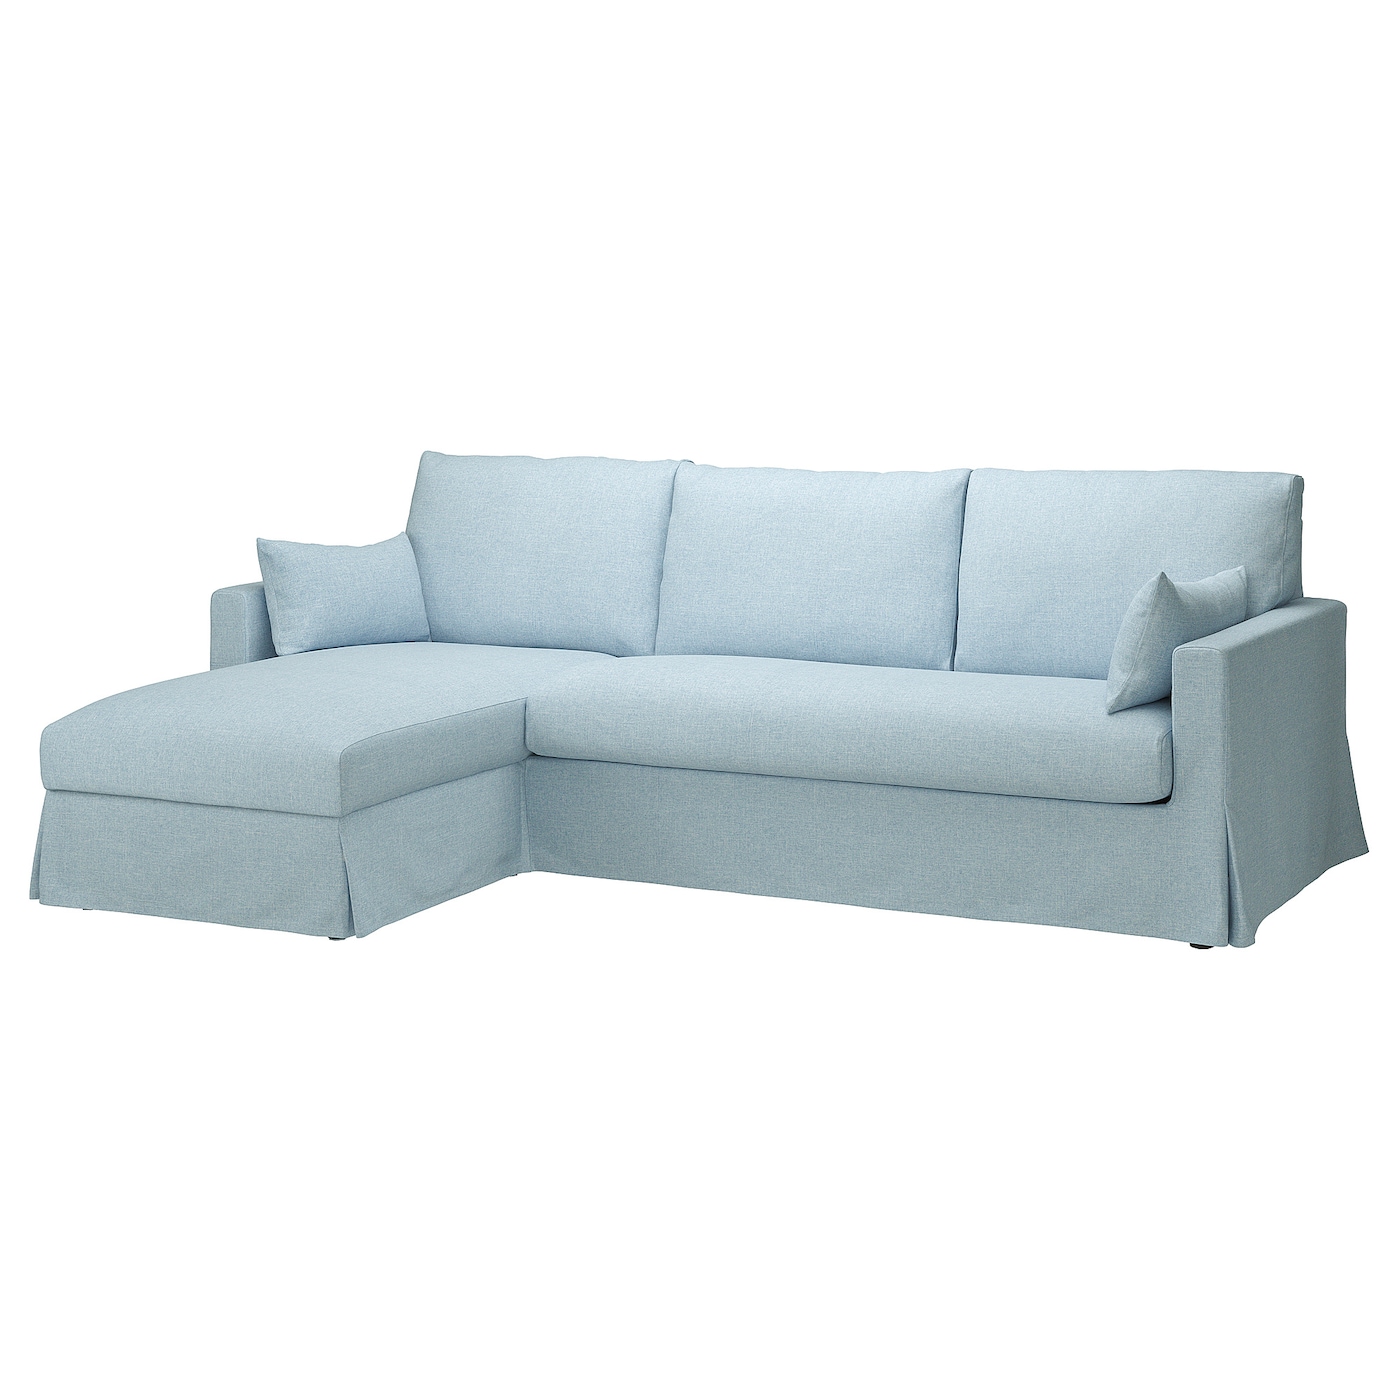 Чехол на 3-местный диван с шезлонгом - HYLTARP IKEA/ ХУЛТАРП ИКЕА, голубой